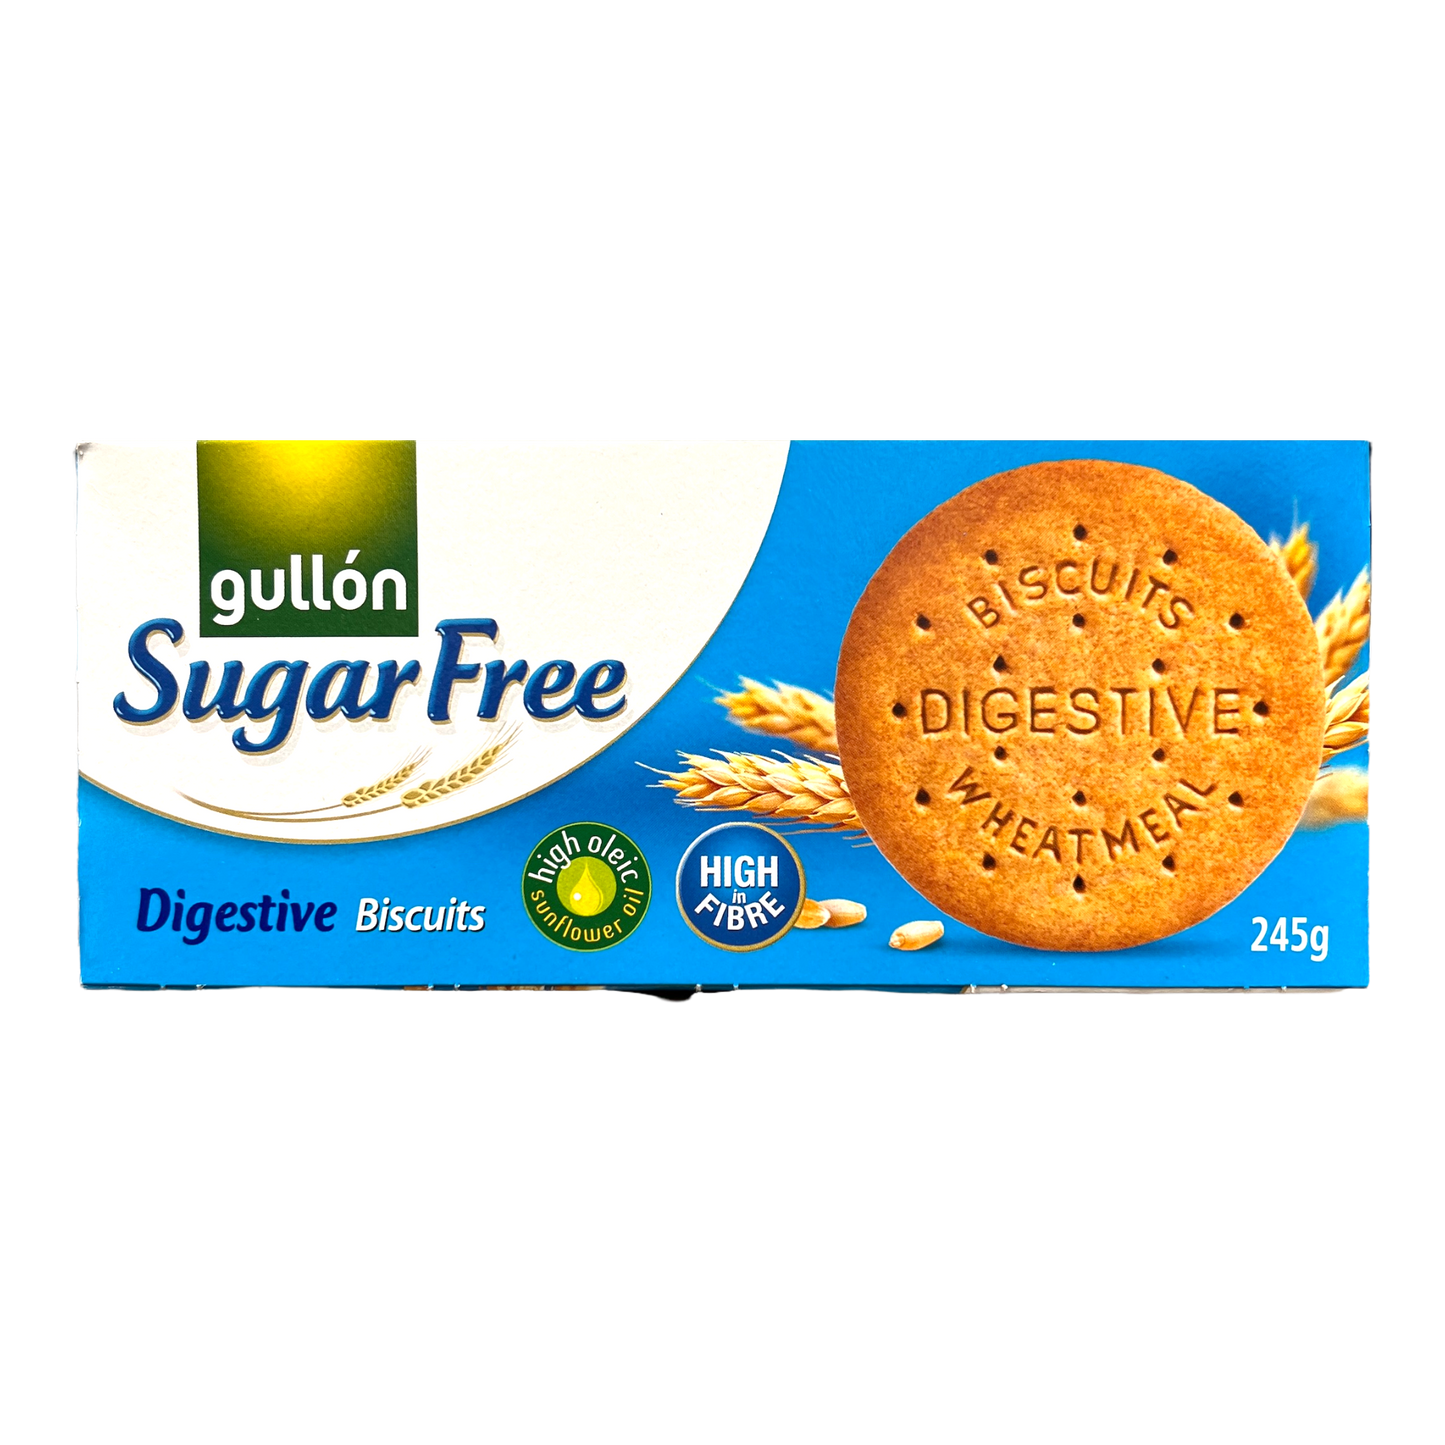 Gullon Sugar Free Digestive Biscuits 245g [Spain]